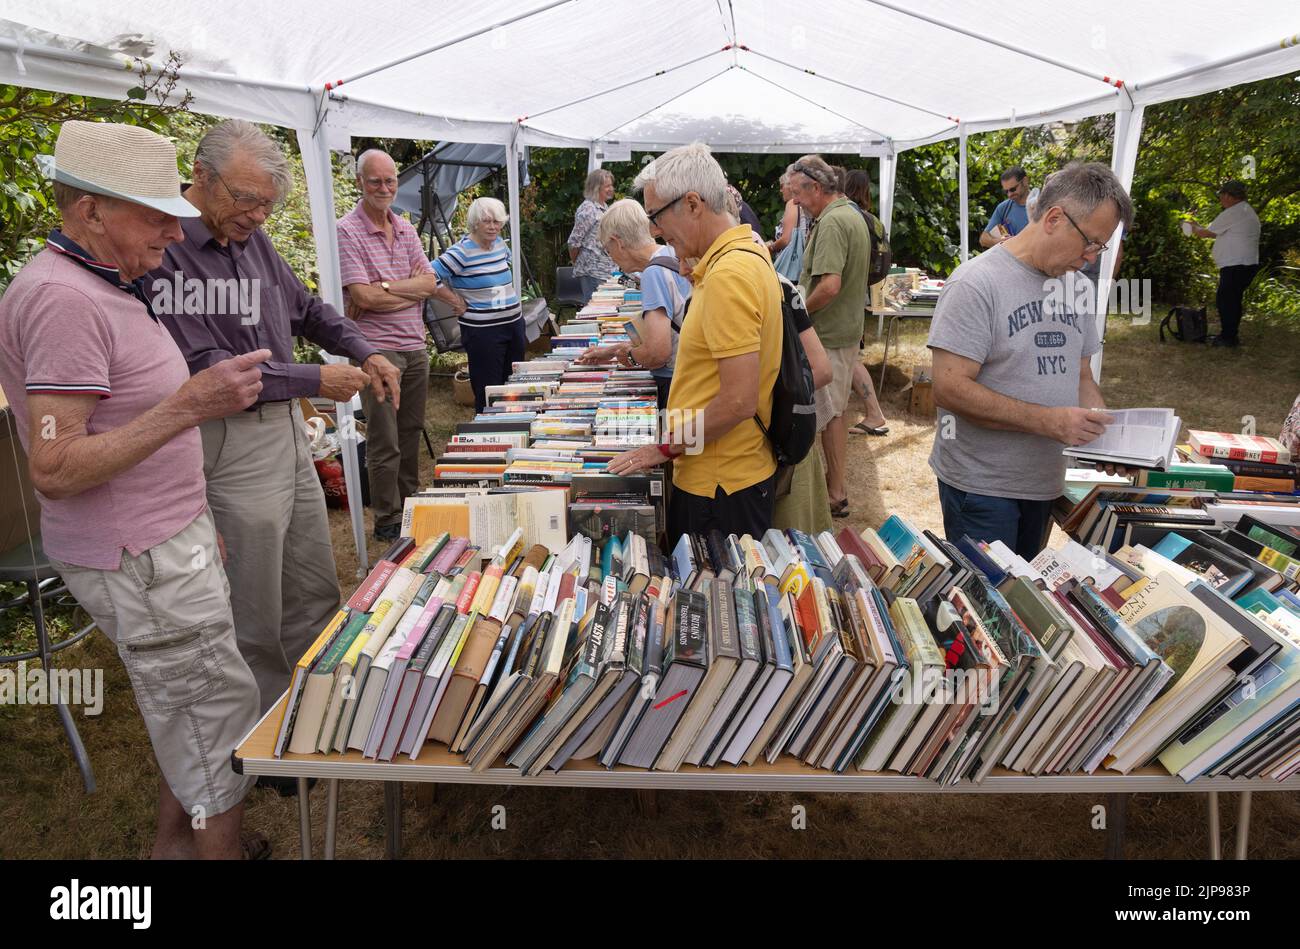 Les personnes âgées achètent des livres de seconde main dans un stand de livres de seconde main, la fête annuelle du village, Burton Bradstock Village, Dorset Royaume-Uni Banque D'Images